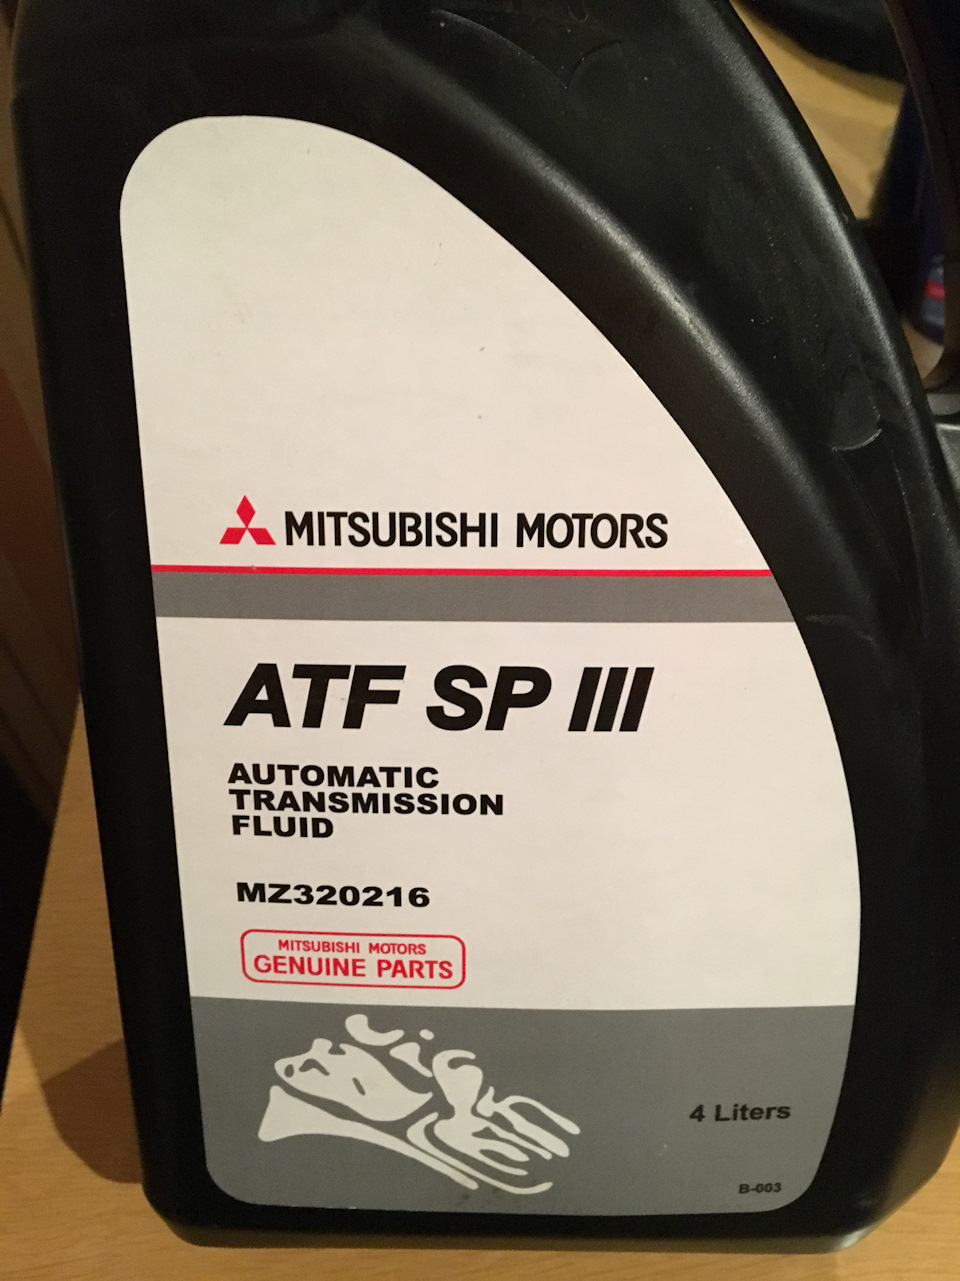 Масло atf sp iii. Масло трансмиссионное sp3 Mitsubishi. ATF sp3 Mitsubishi. Mitsubishi ATF SP-III 4л. Mz320216.